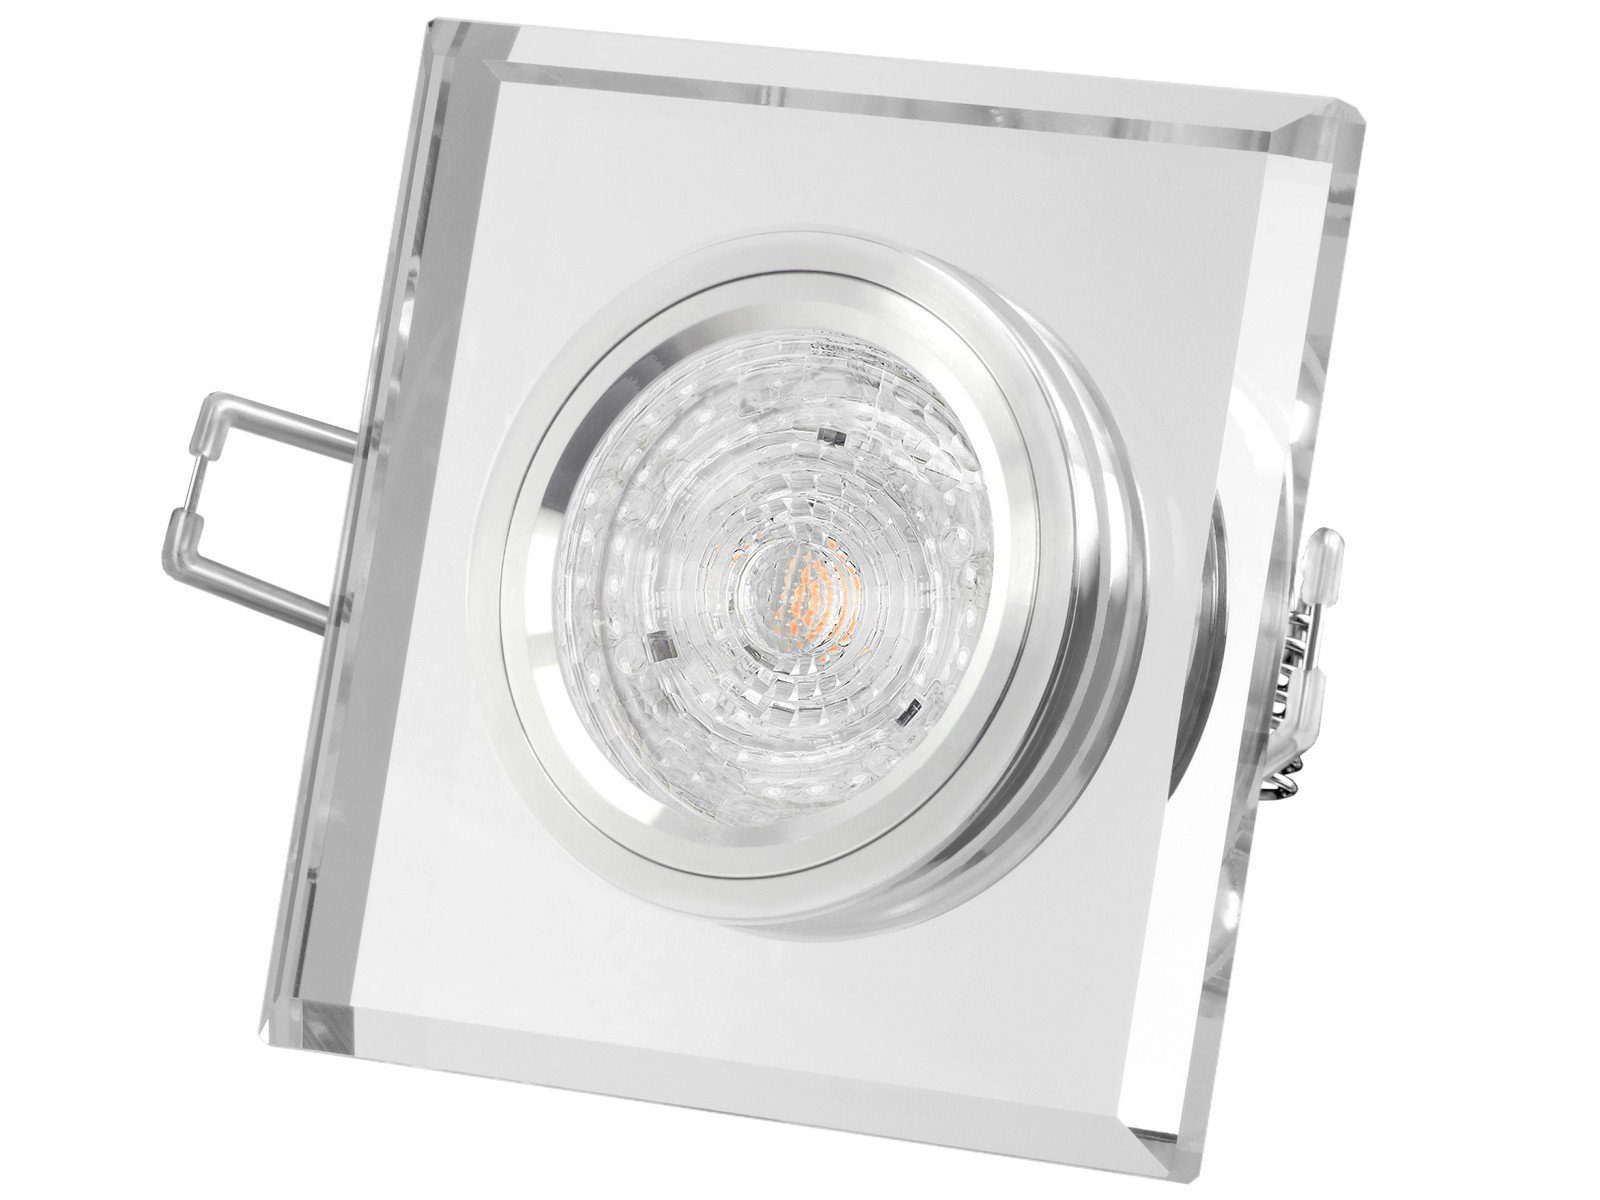 SSC-LUXon LED Einbaustrahler Design LED-Einbauspot aus Glas quadratisch klar spiegelnd, 4,9W, Neutralweiß